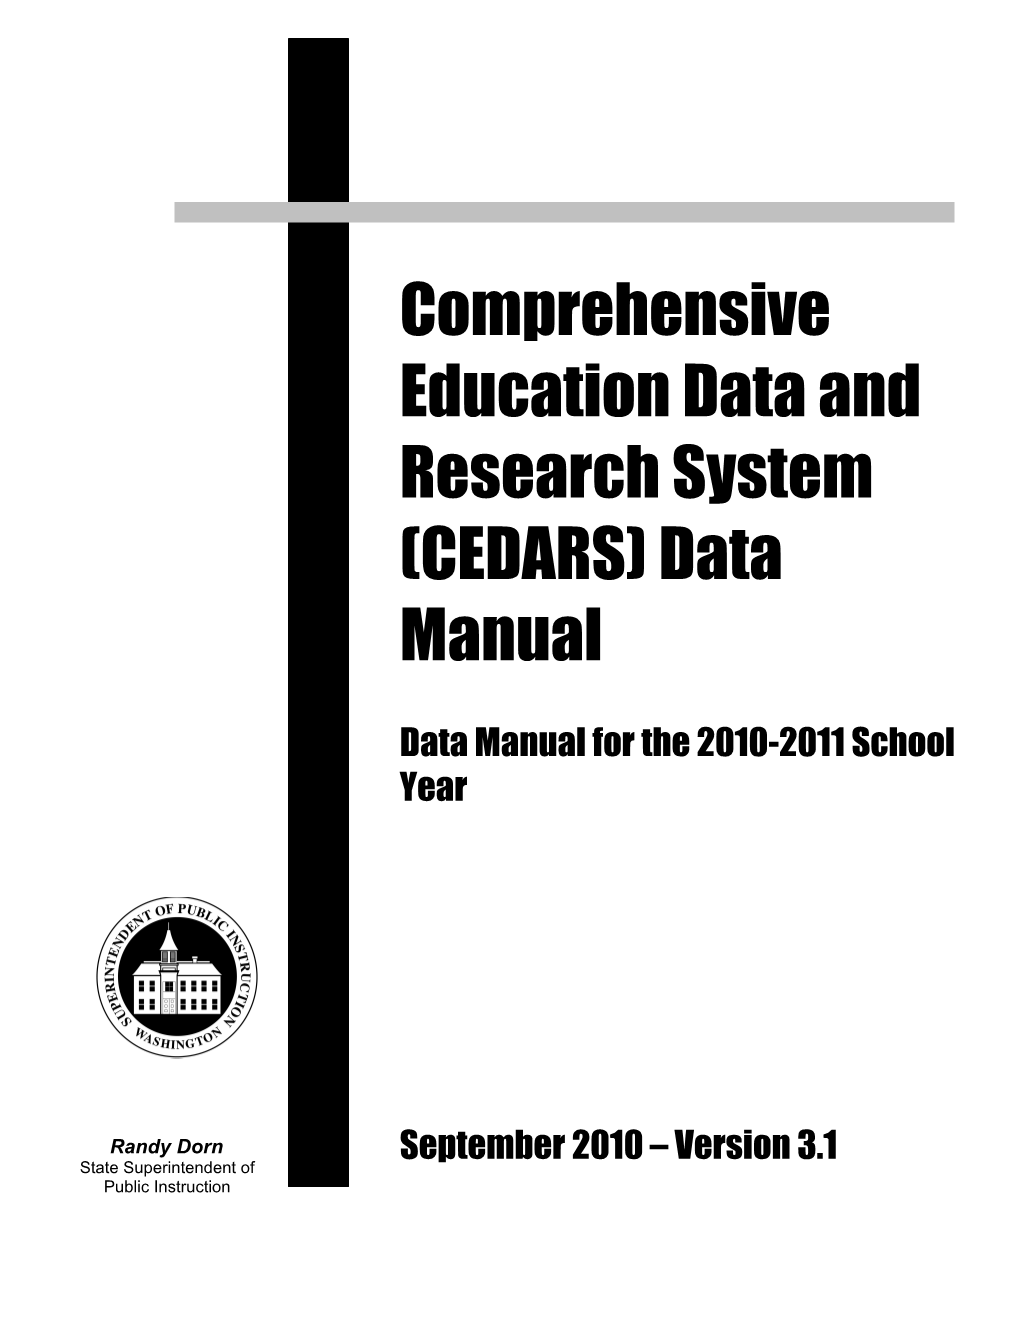 CEDARS Data Manual V.1.3 July 2008